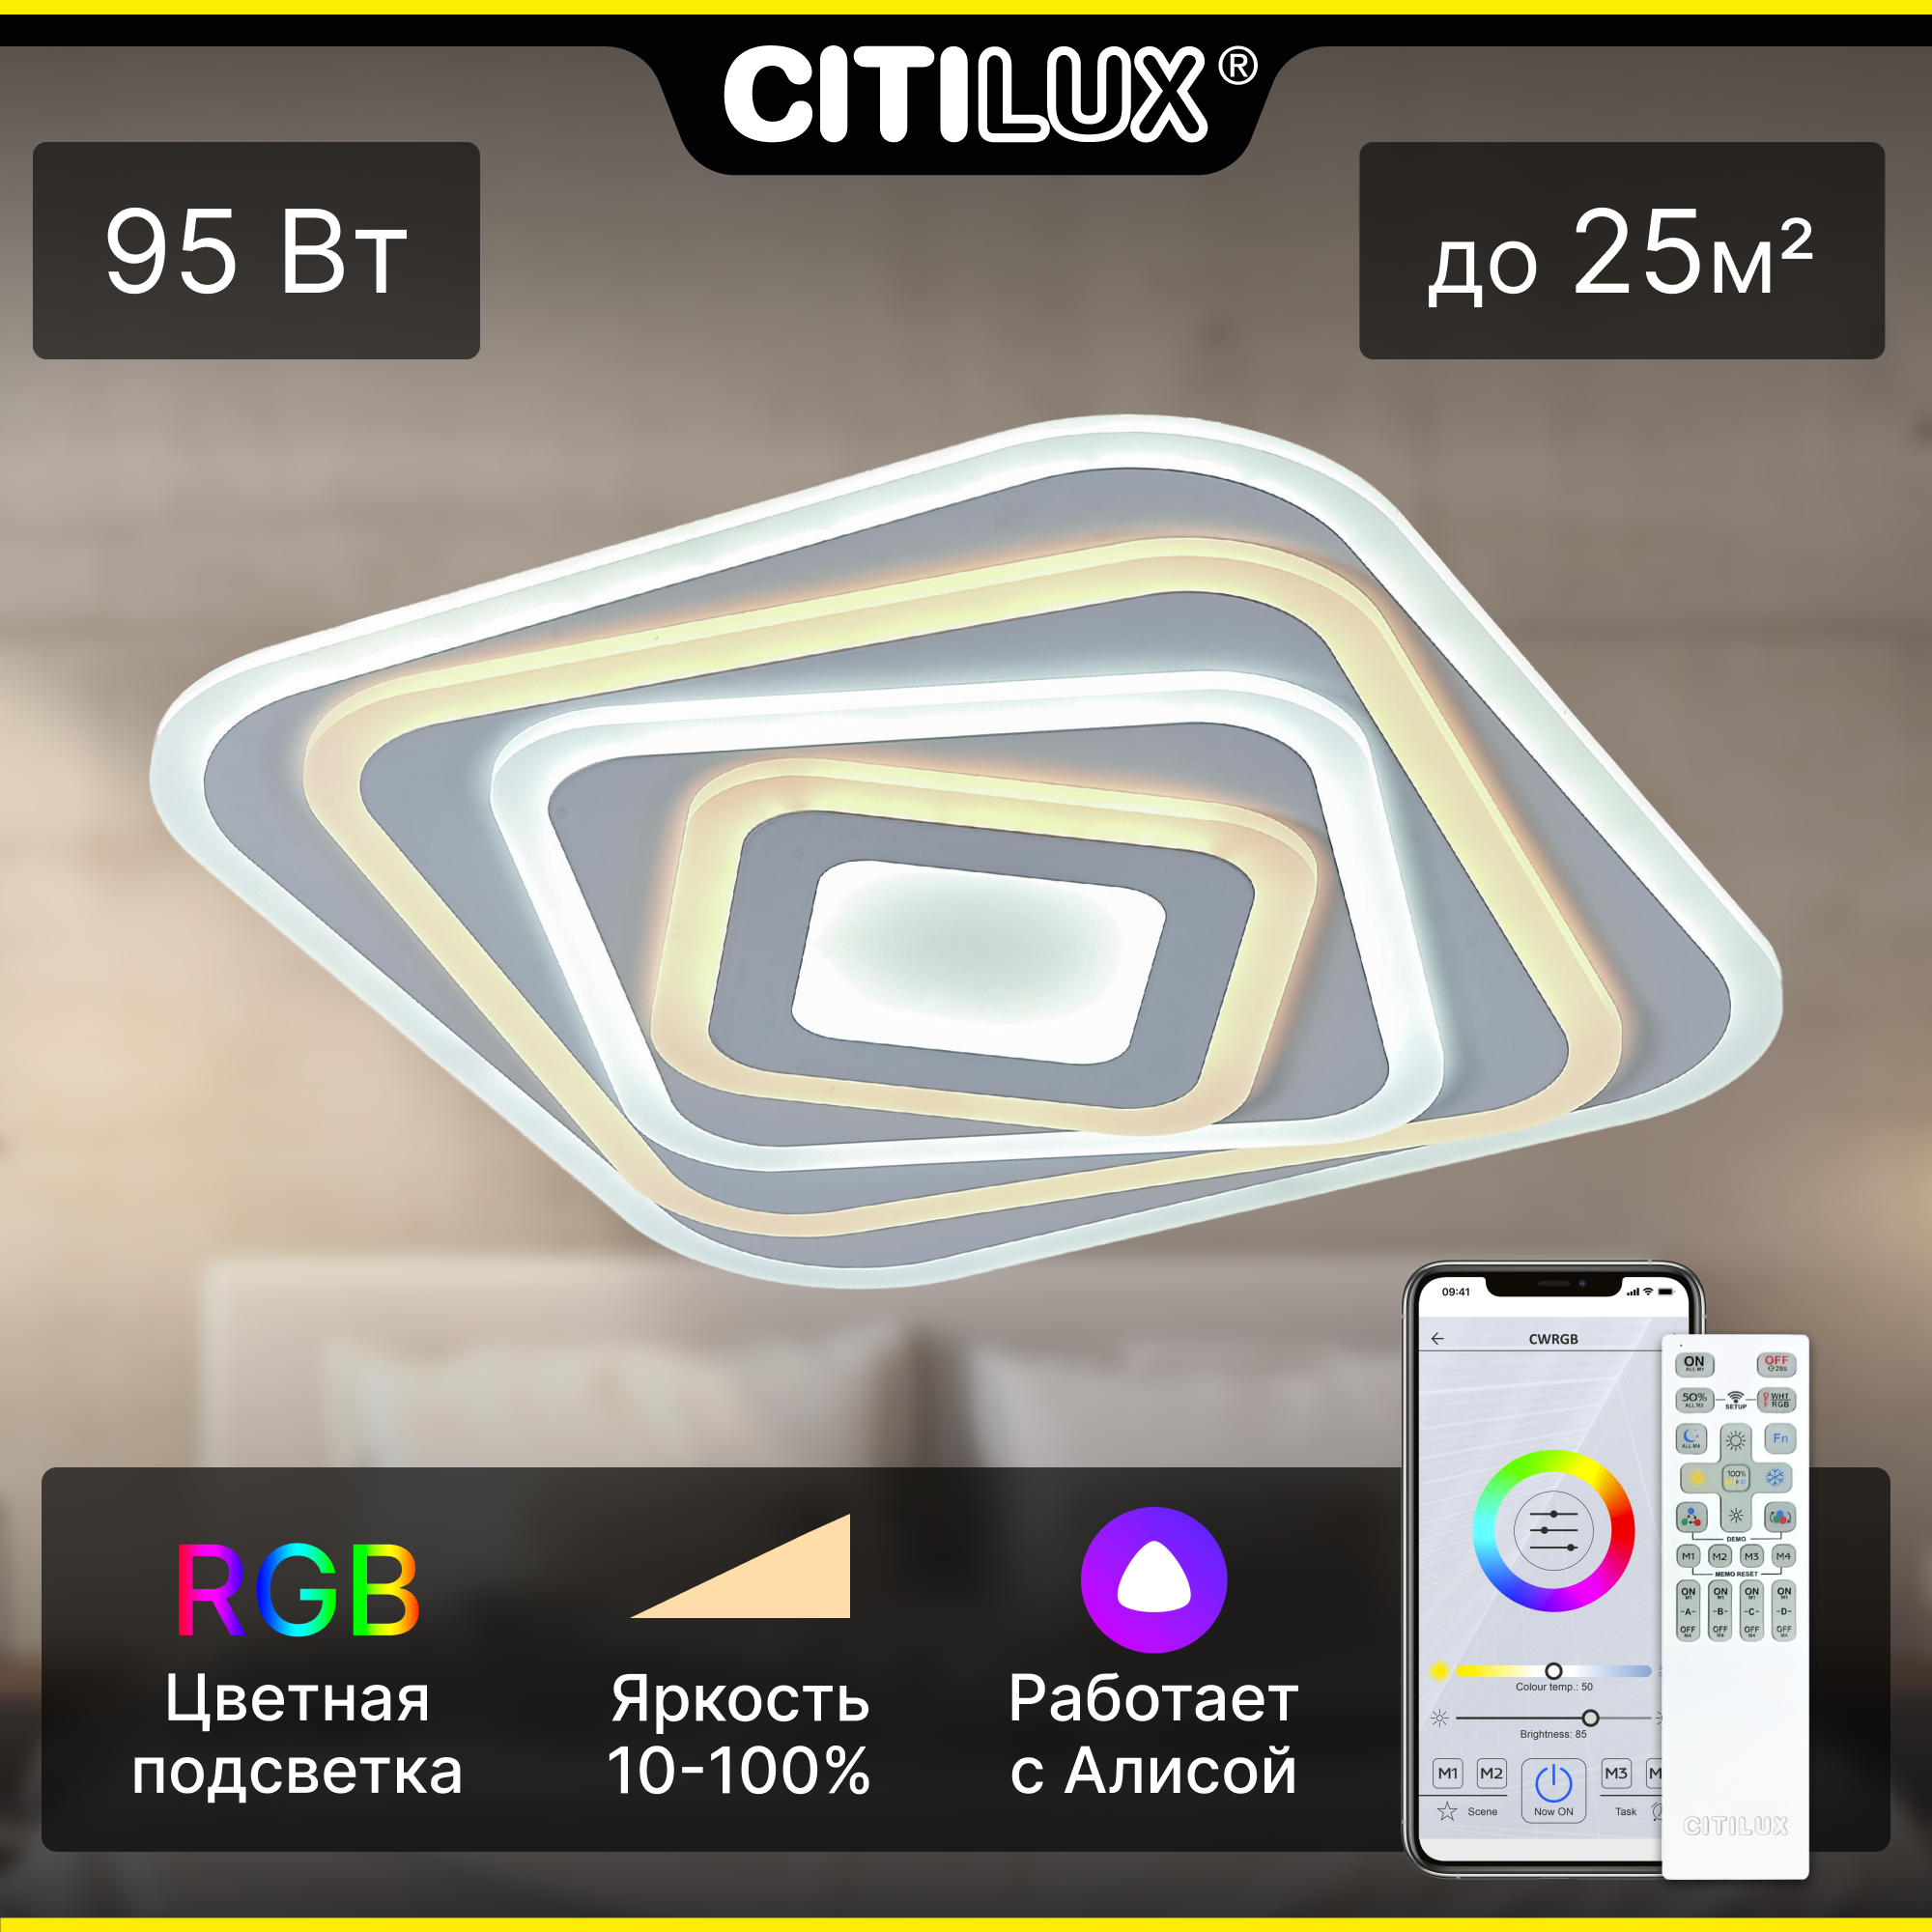 Citilux Триест Смарт CL737A44E RGB Умная люстра